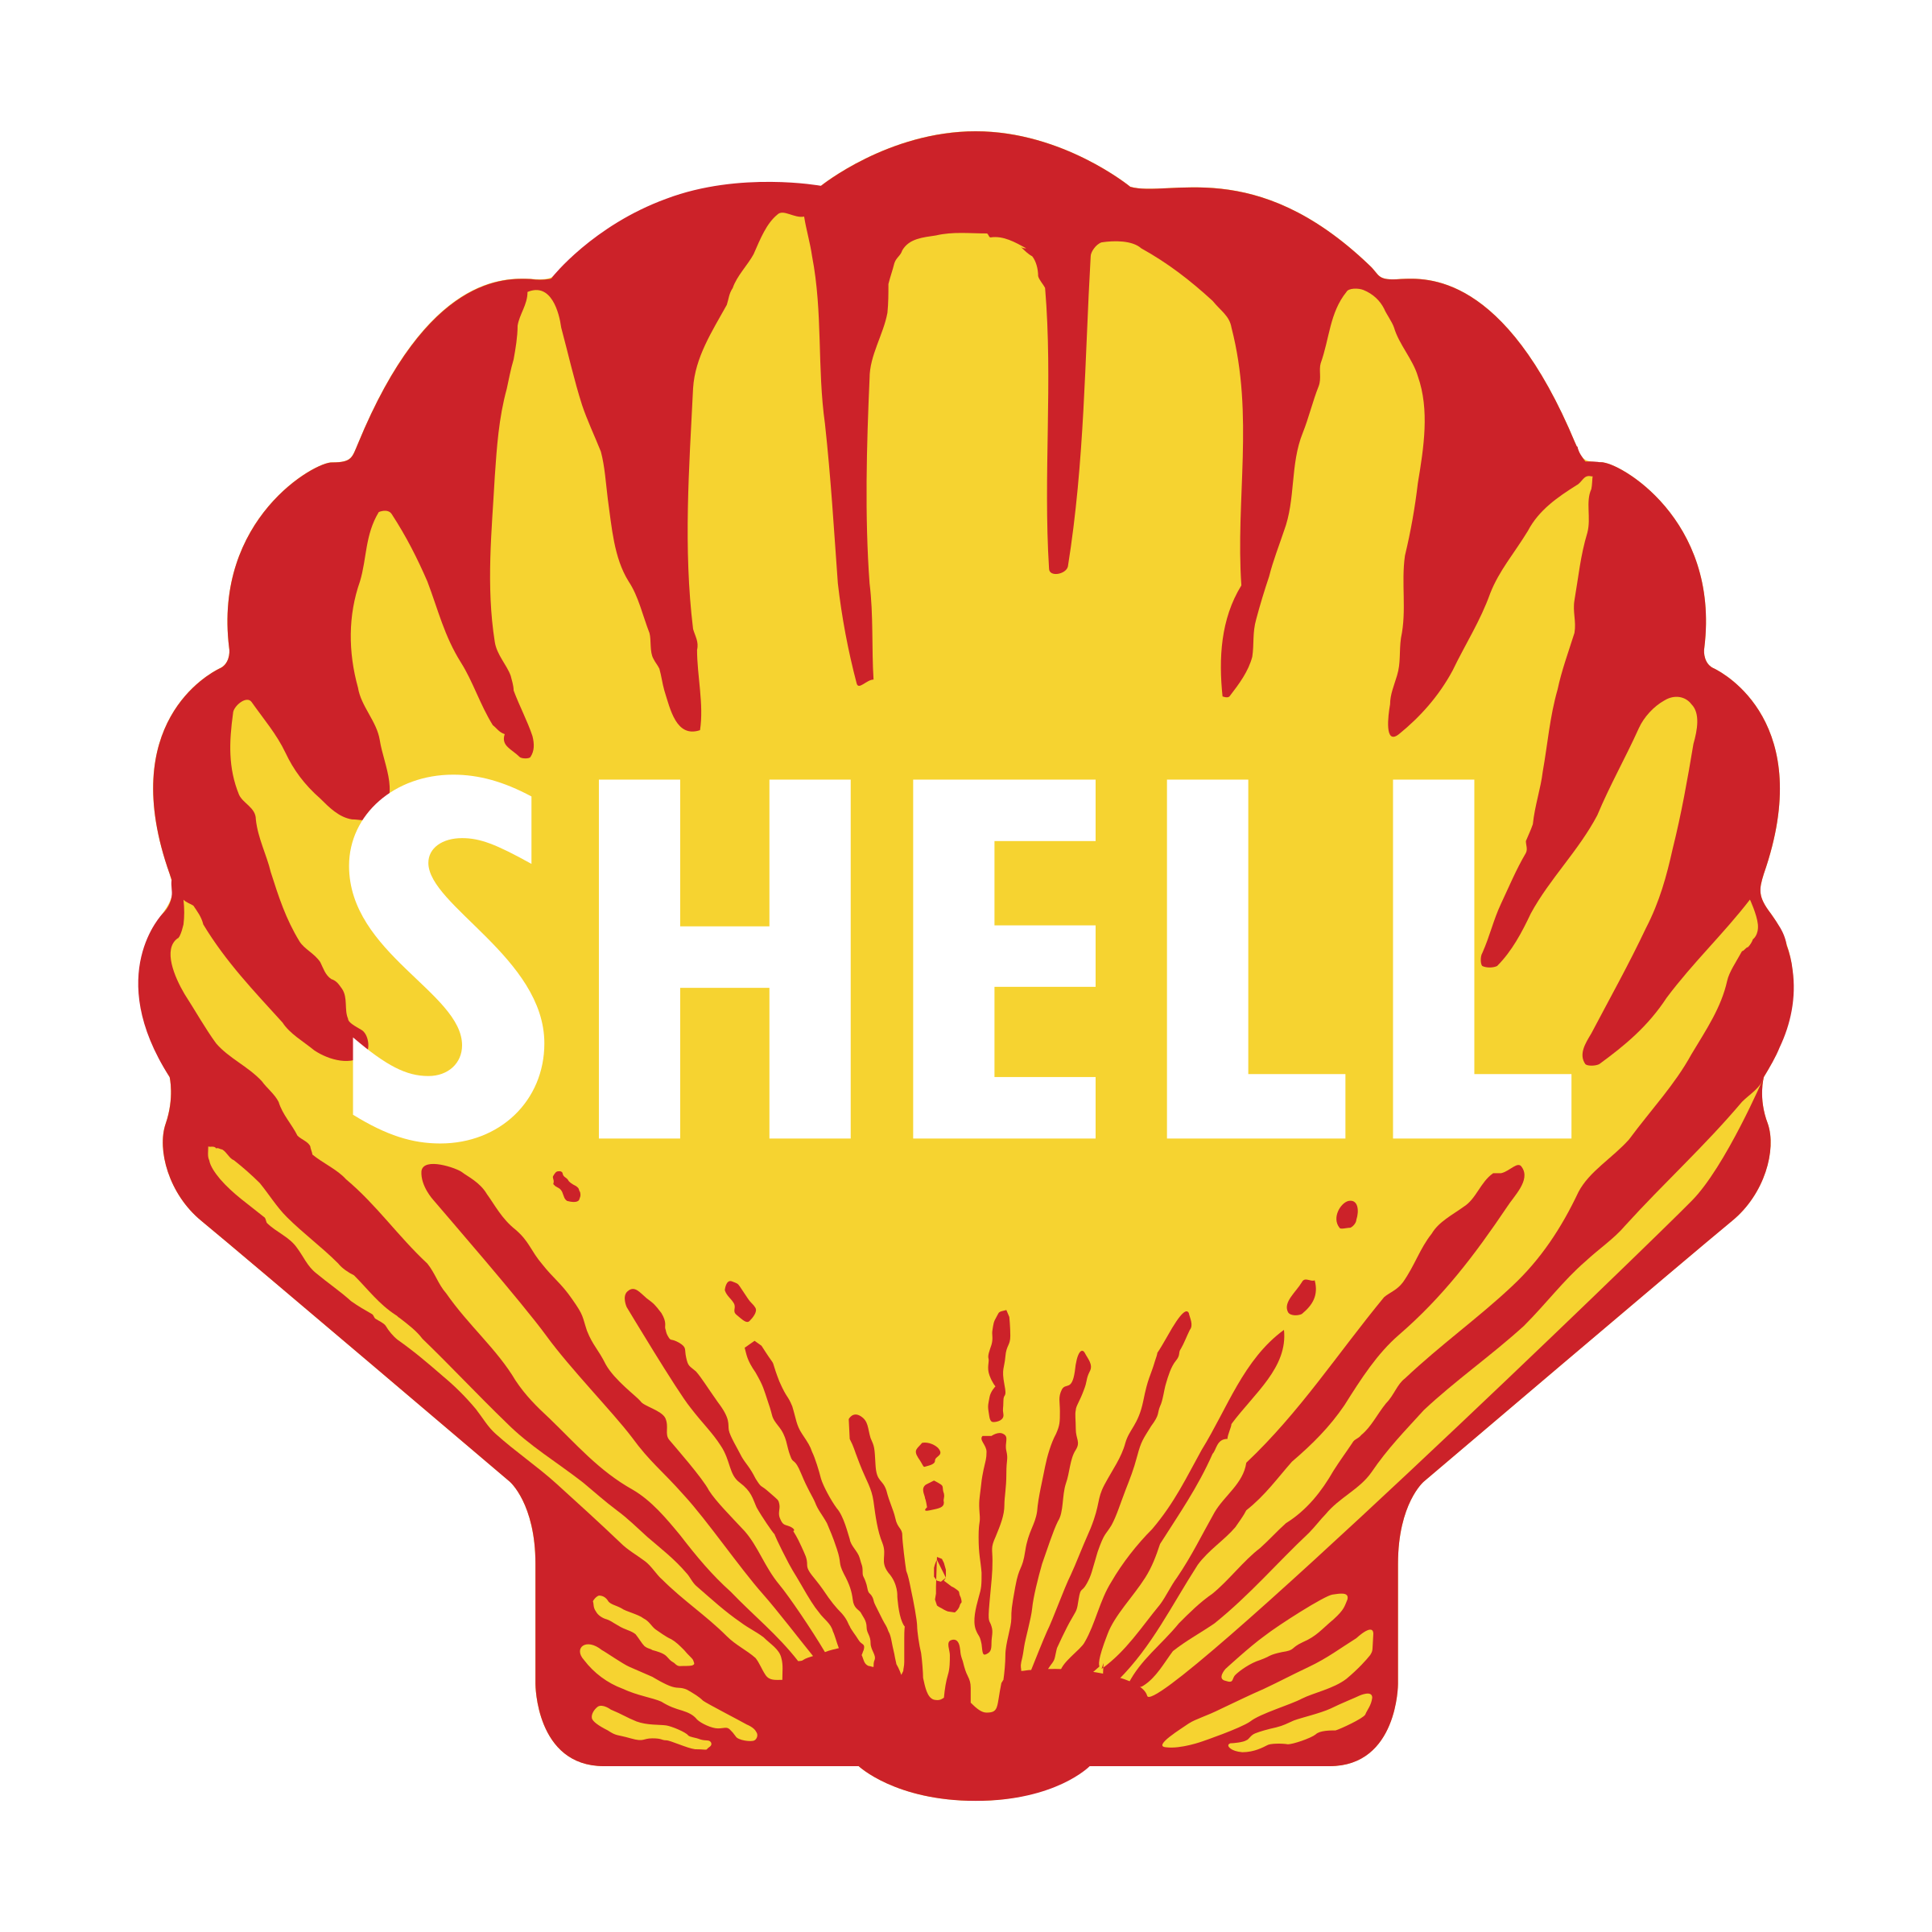 Brandmark Logos, Shell Logo, 